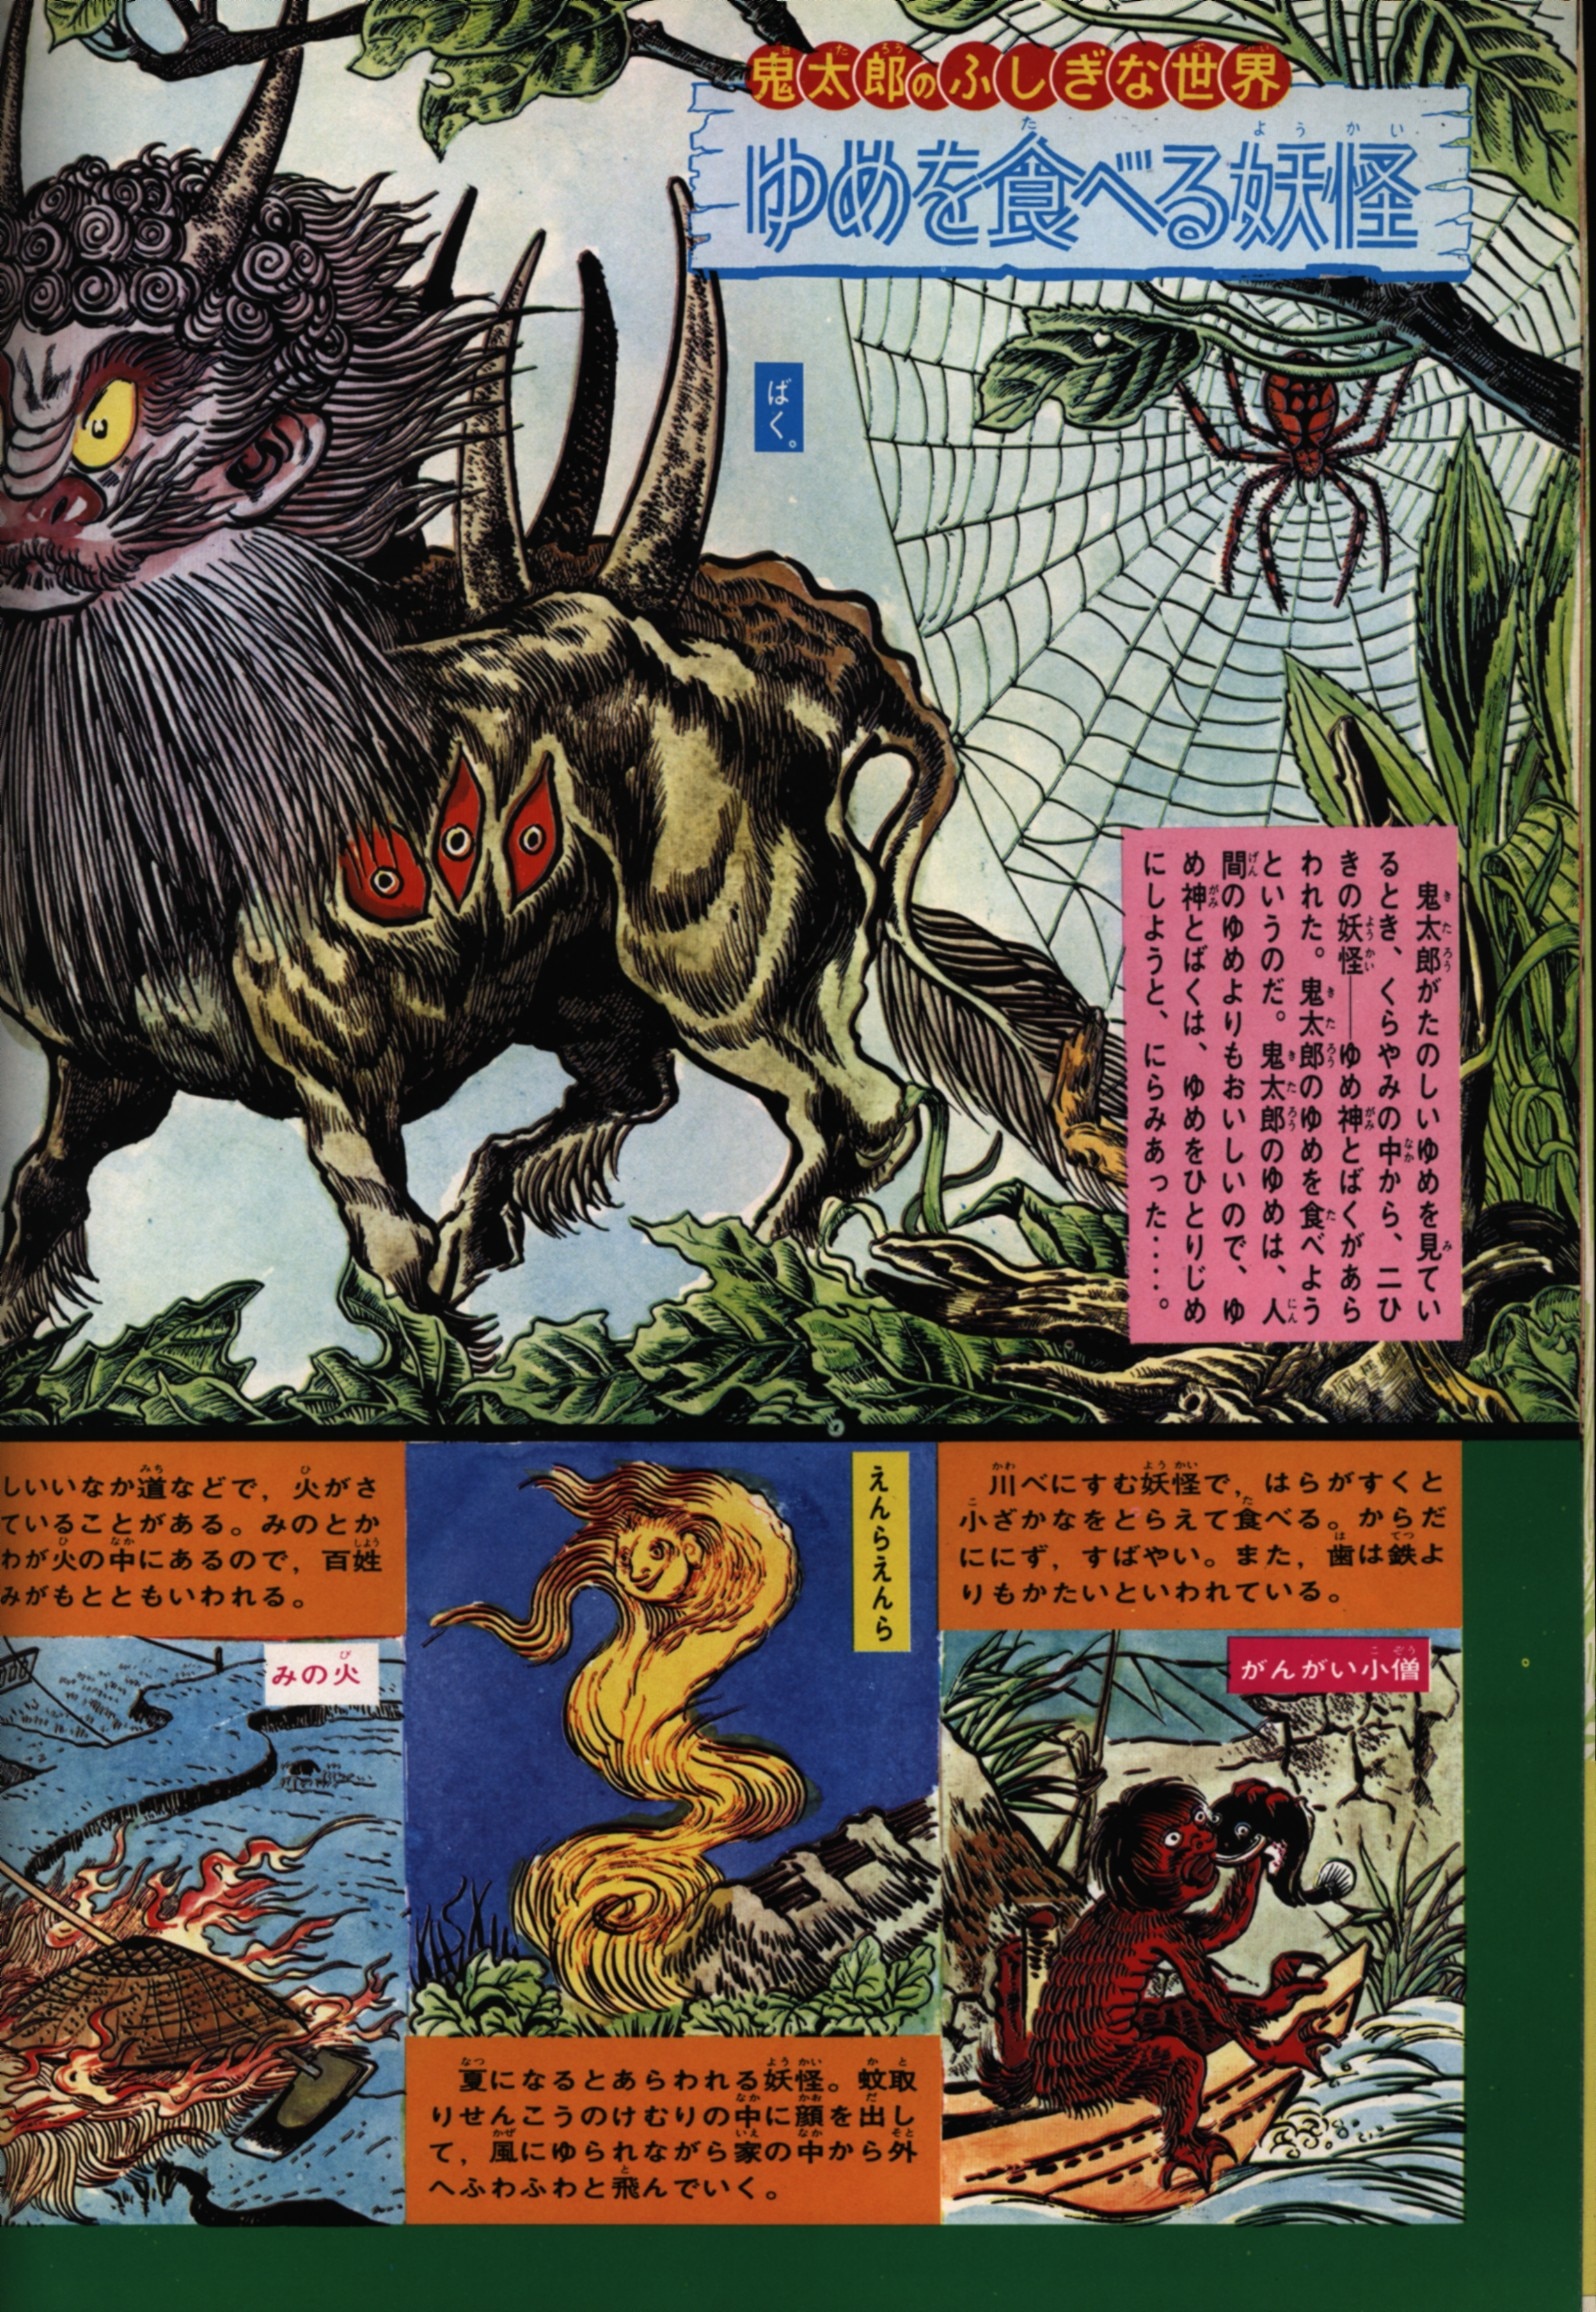 Hobunkan Publication Shigeru Mizuki Yokai Monsters One Hundred Monsters Yokai Hyaku Monogatari With Obi Mandarake Online Shop